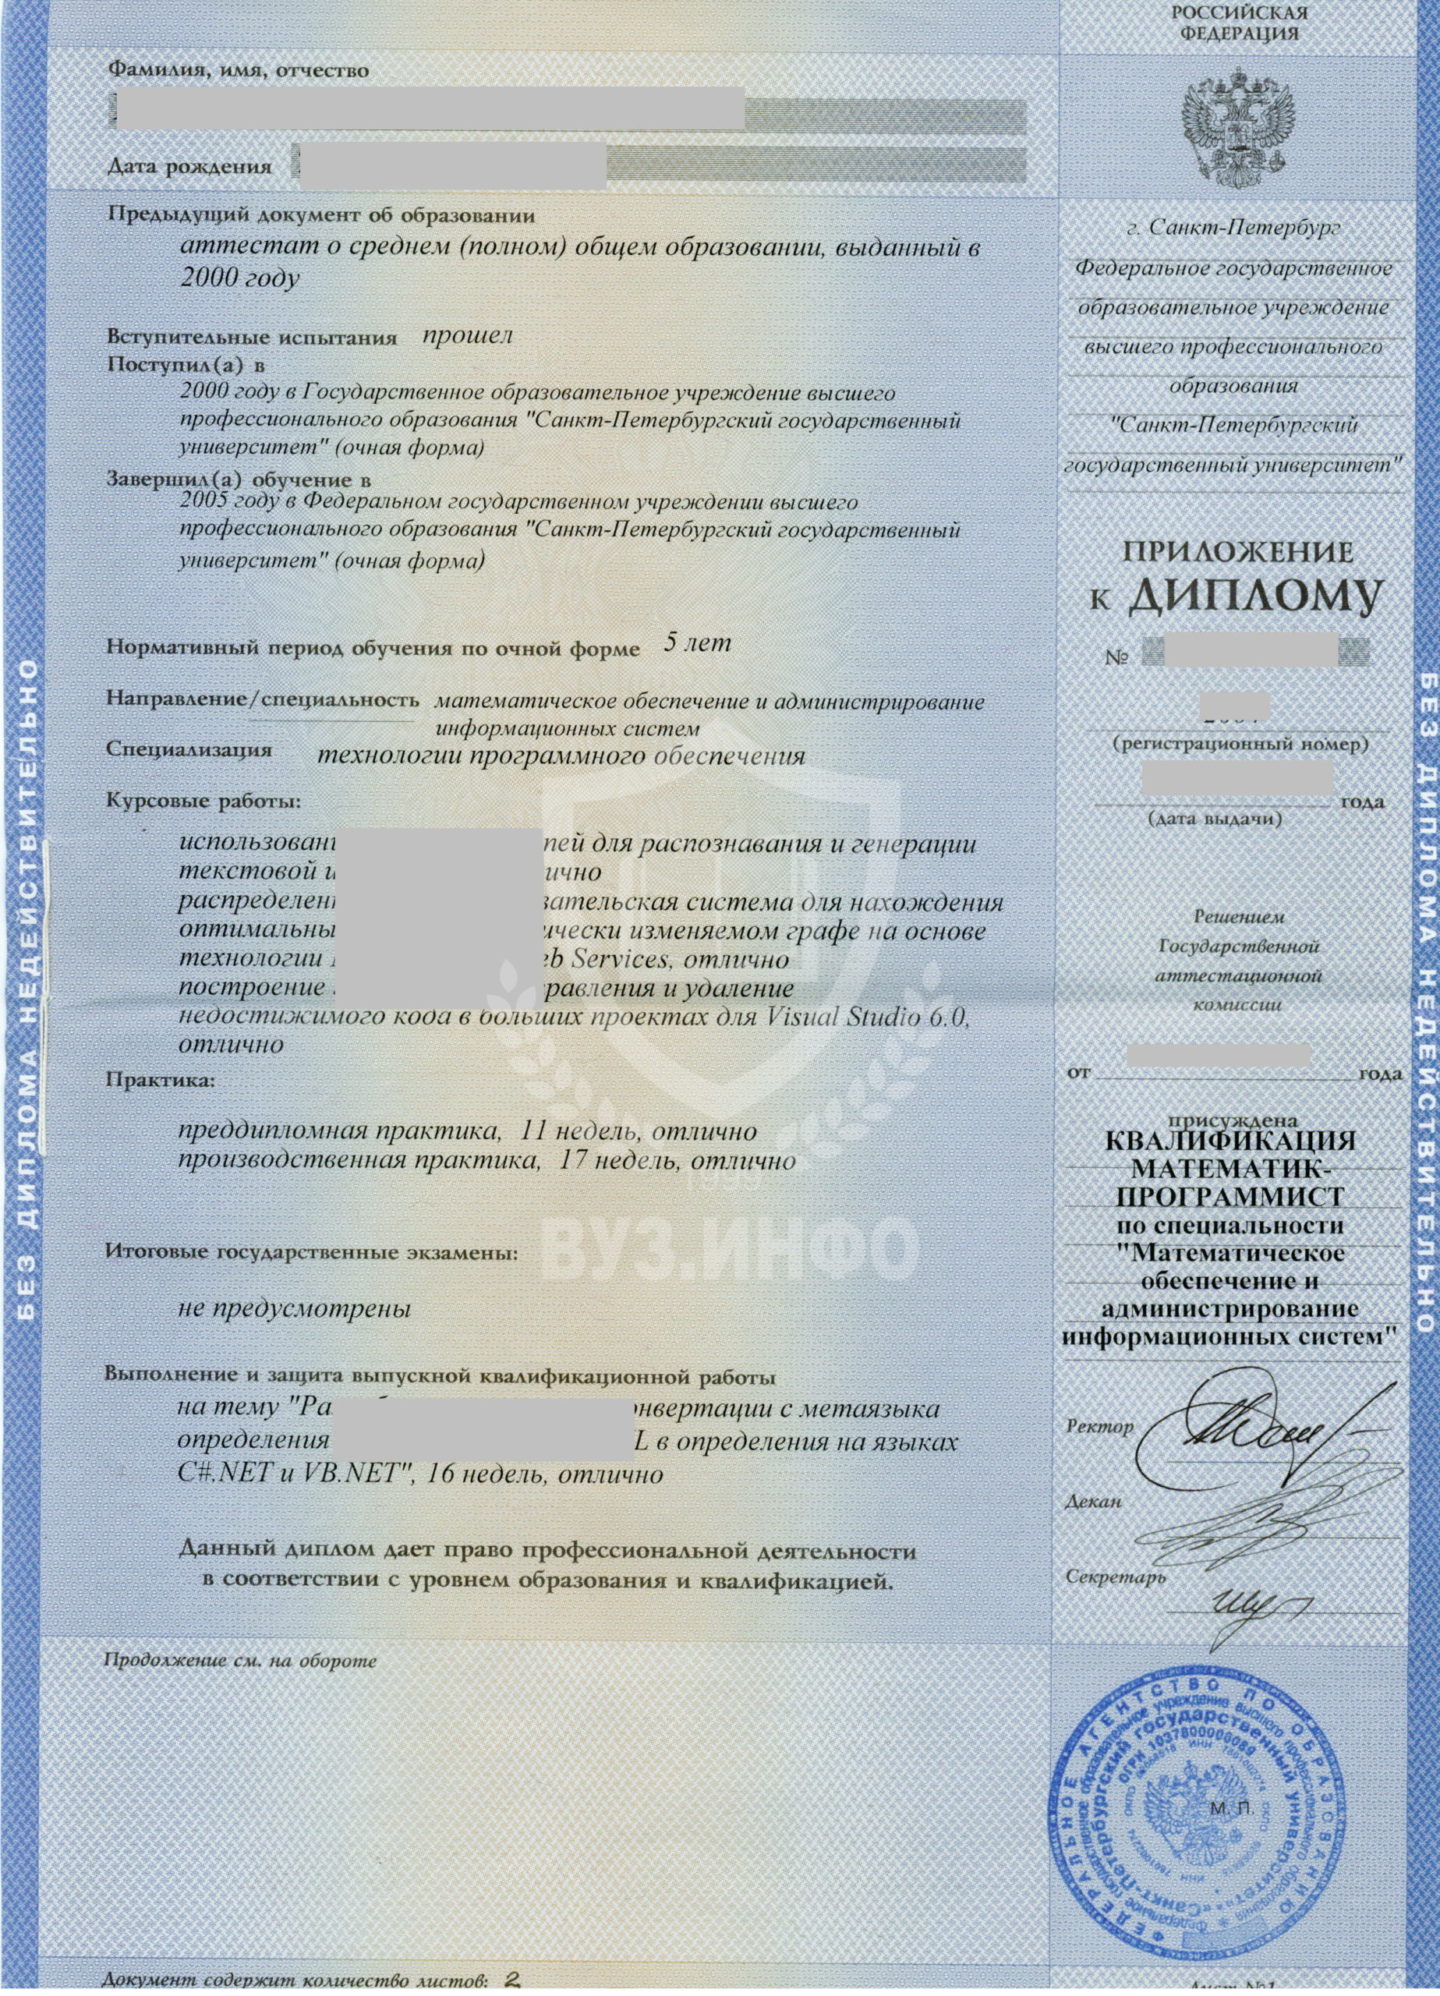 Приложение к диплому Санкт-Петербургского государственного университета 2005 года на ГоЗнаке